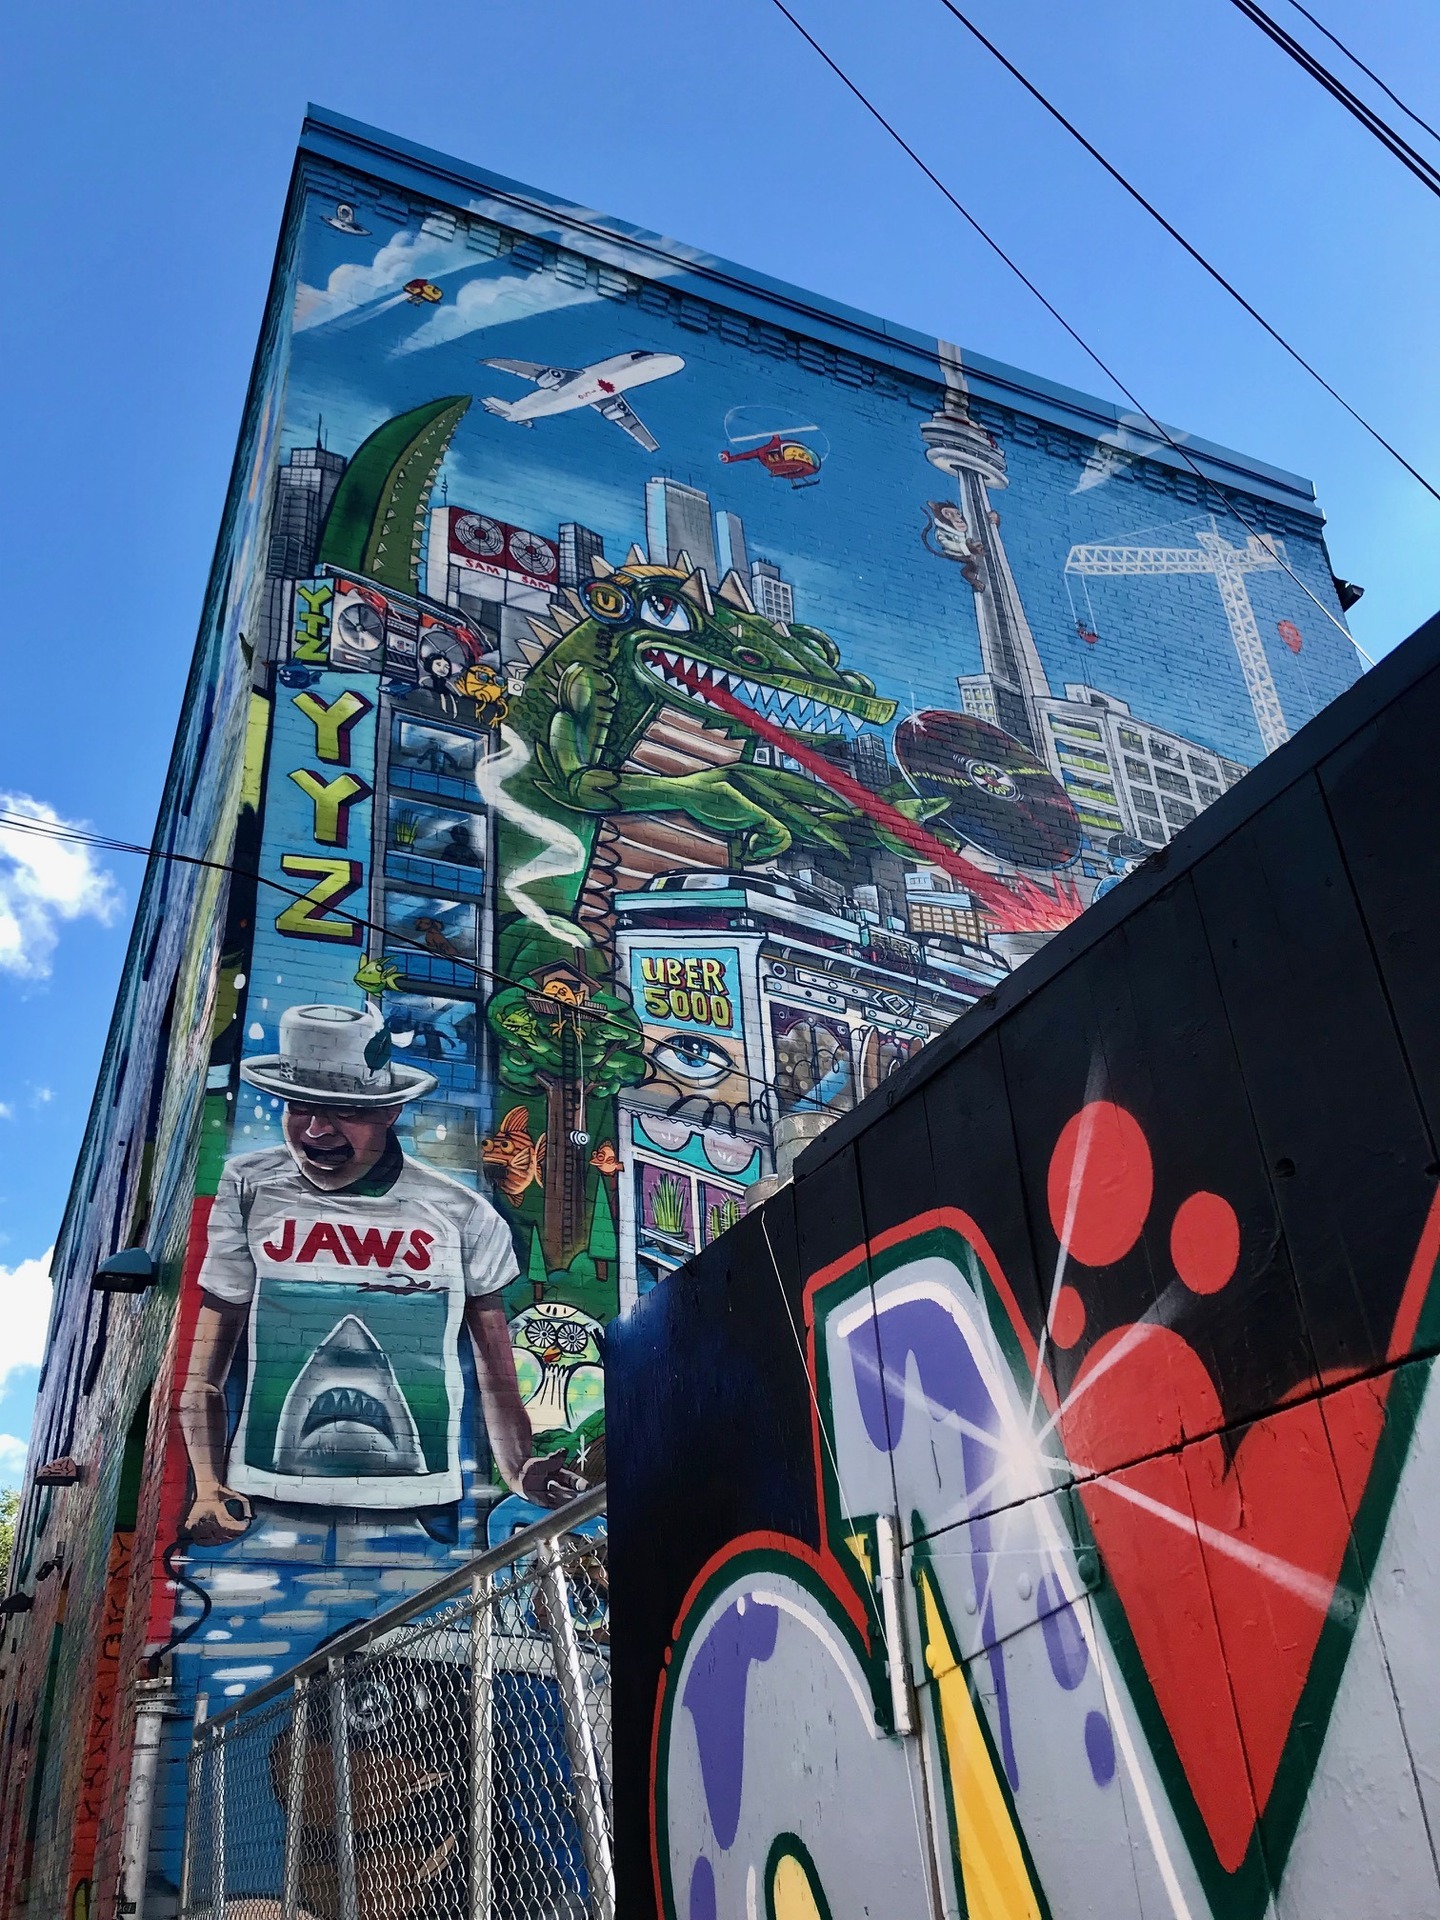 Uber500 está espalhado pela cidade toda e tem esse mural gigante no Graffiti Alley